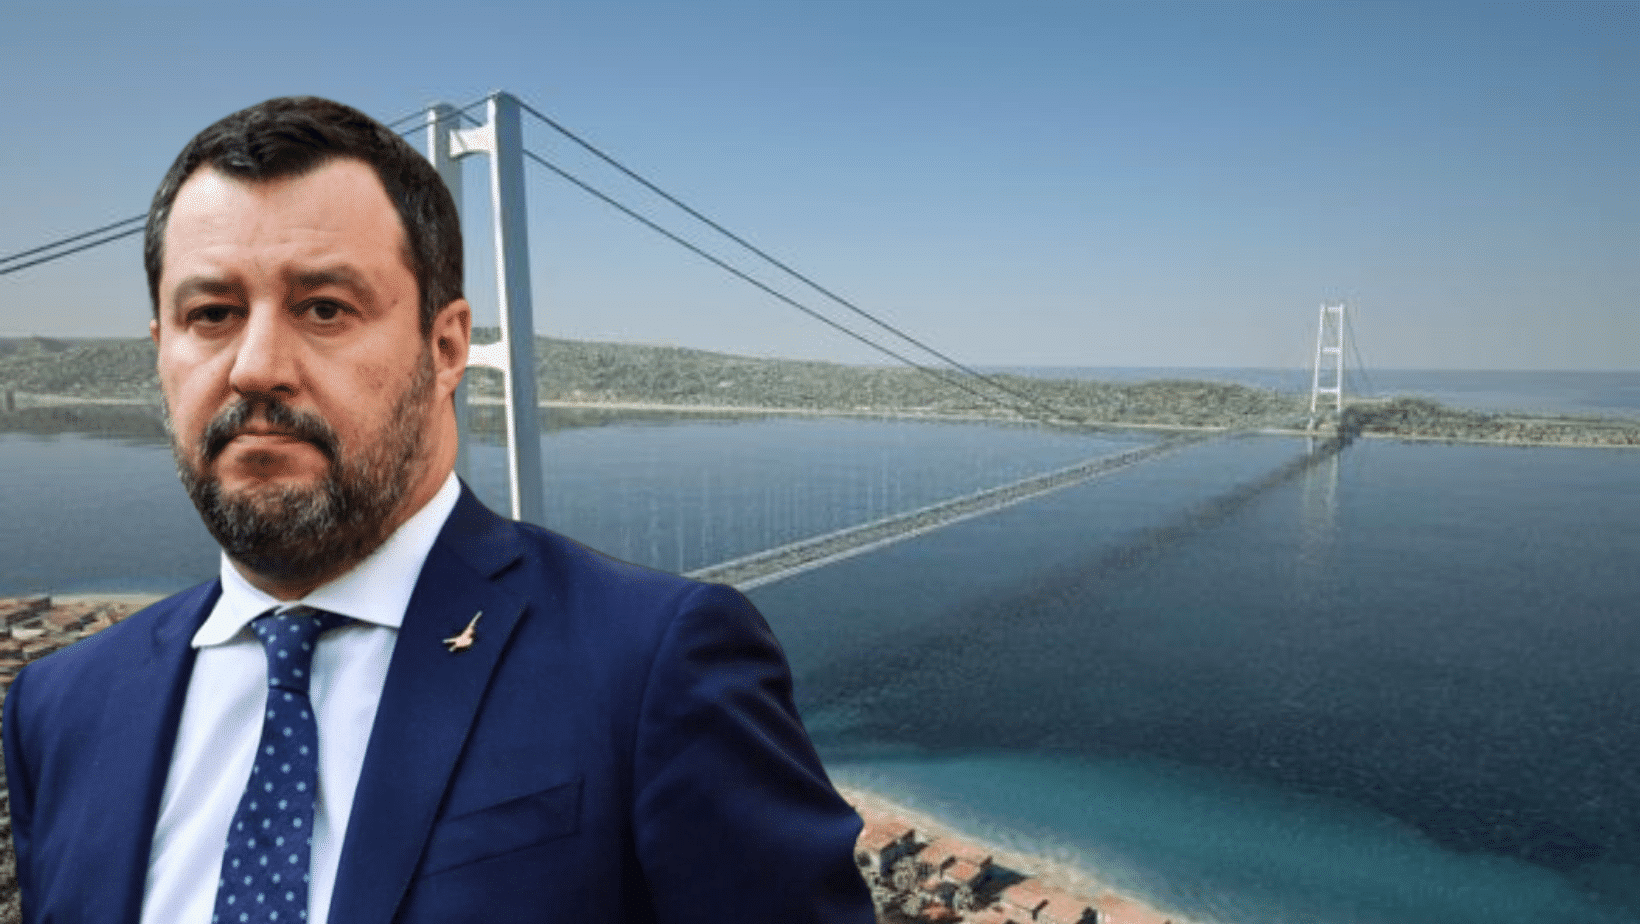 Ponte sullo Stretto, Salvini: “Lunedì in legge di bilancio ci saranno i fondi necessari”